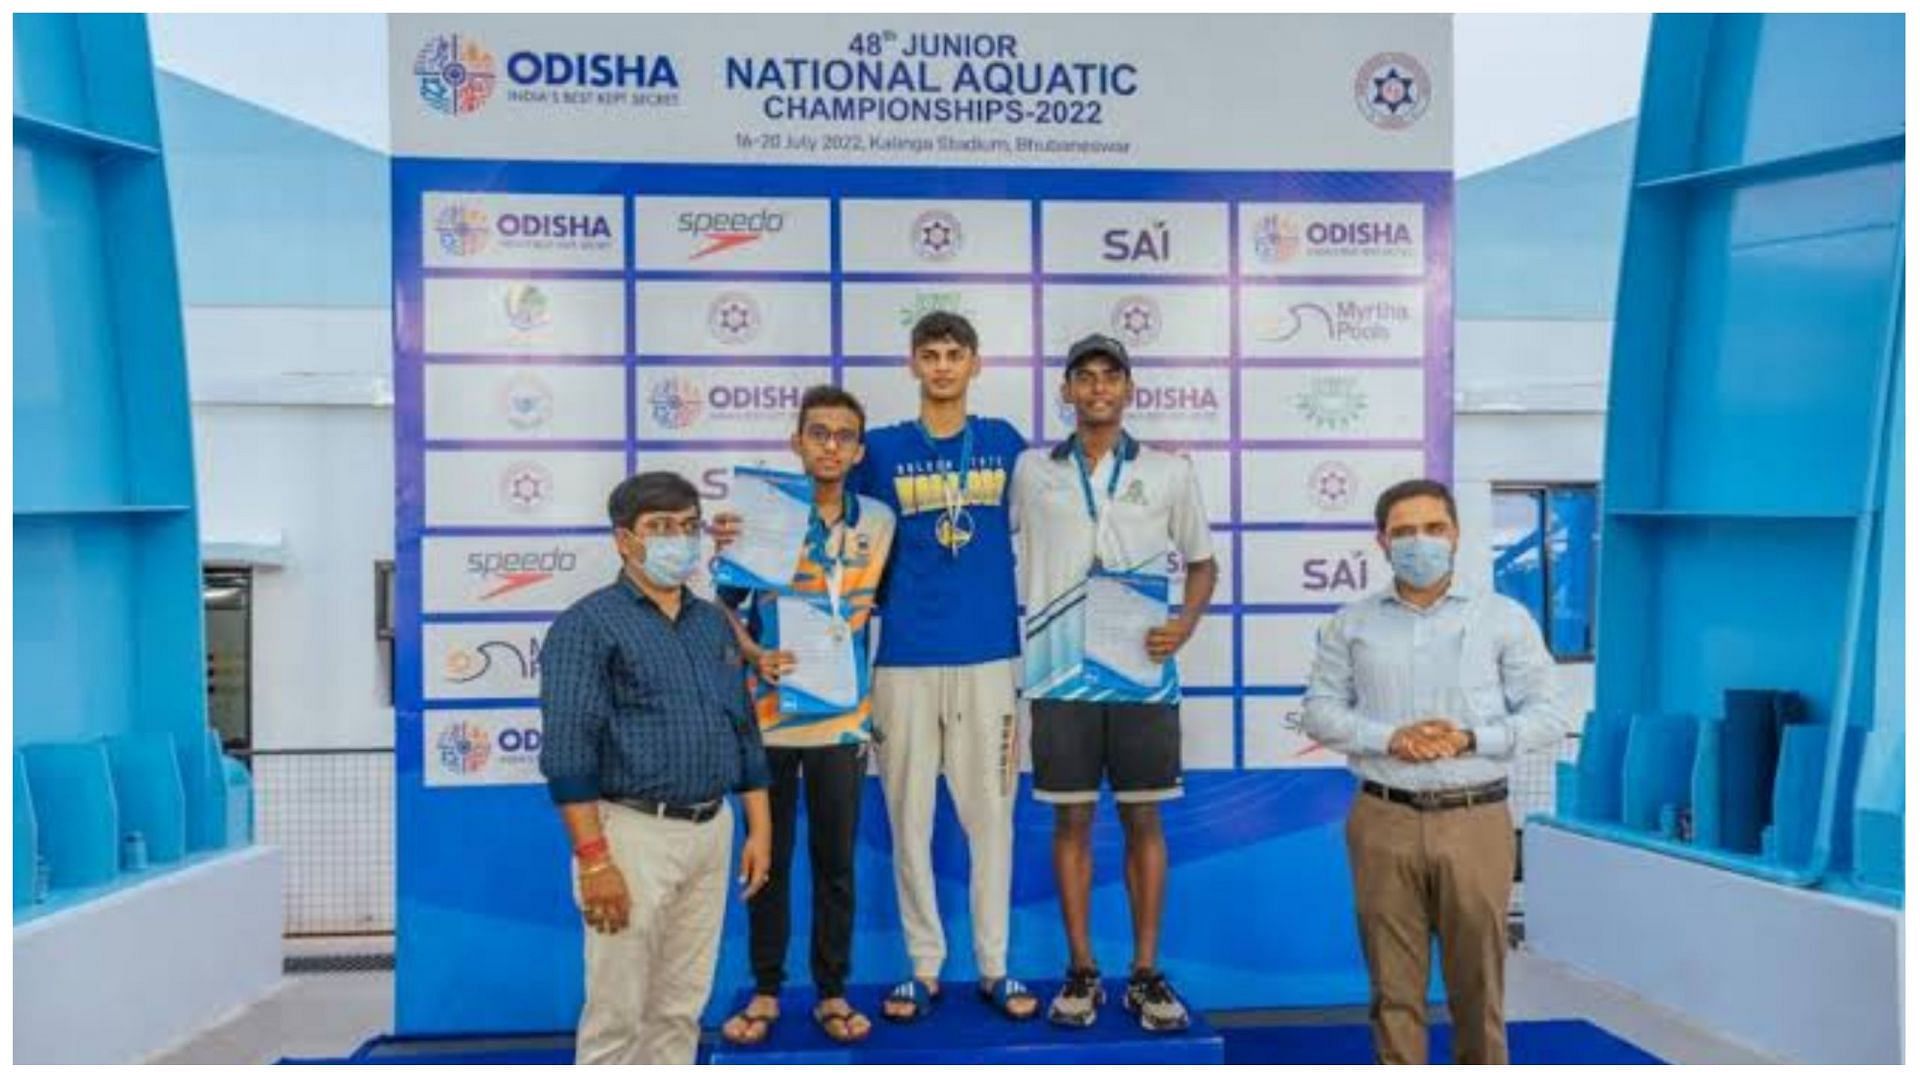 48TH Junior National Aquatic Championships 2022 - Indian Aquatics